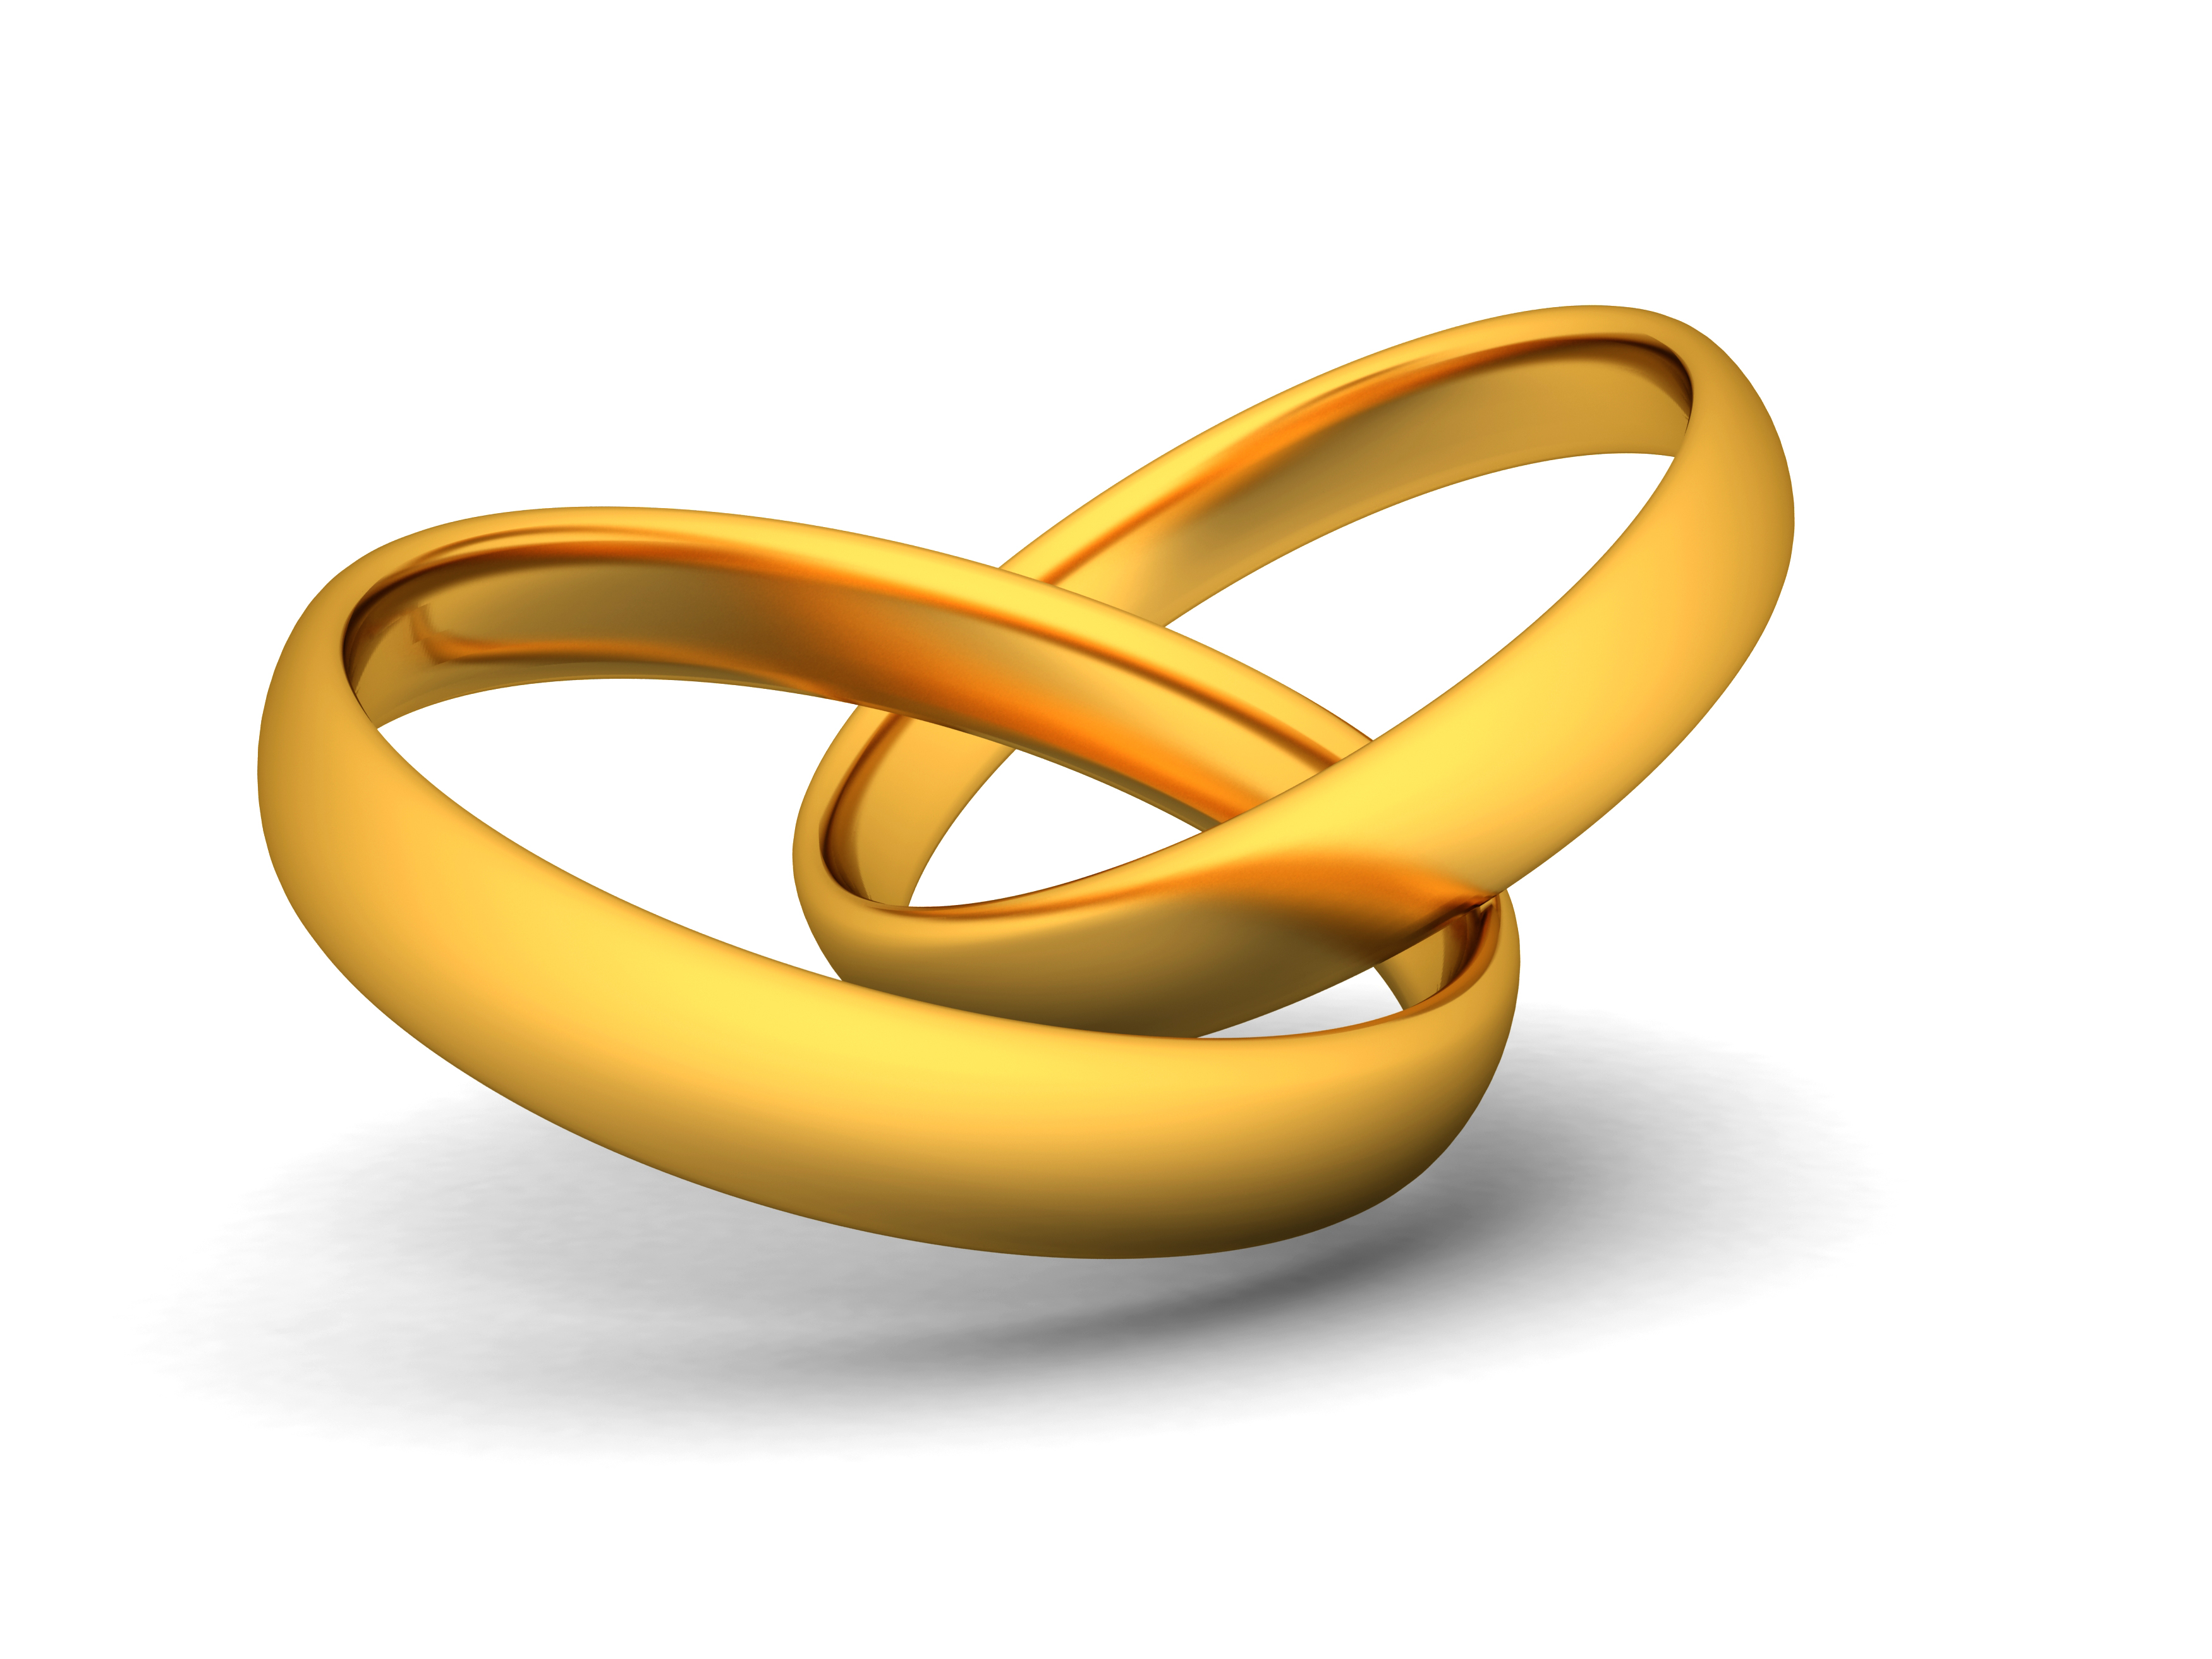 Wedding Ring free icons designed by Freepik | Free icons, Icon design,  Vector icon design